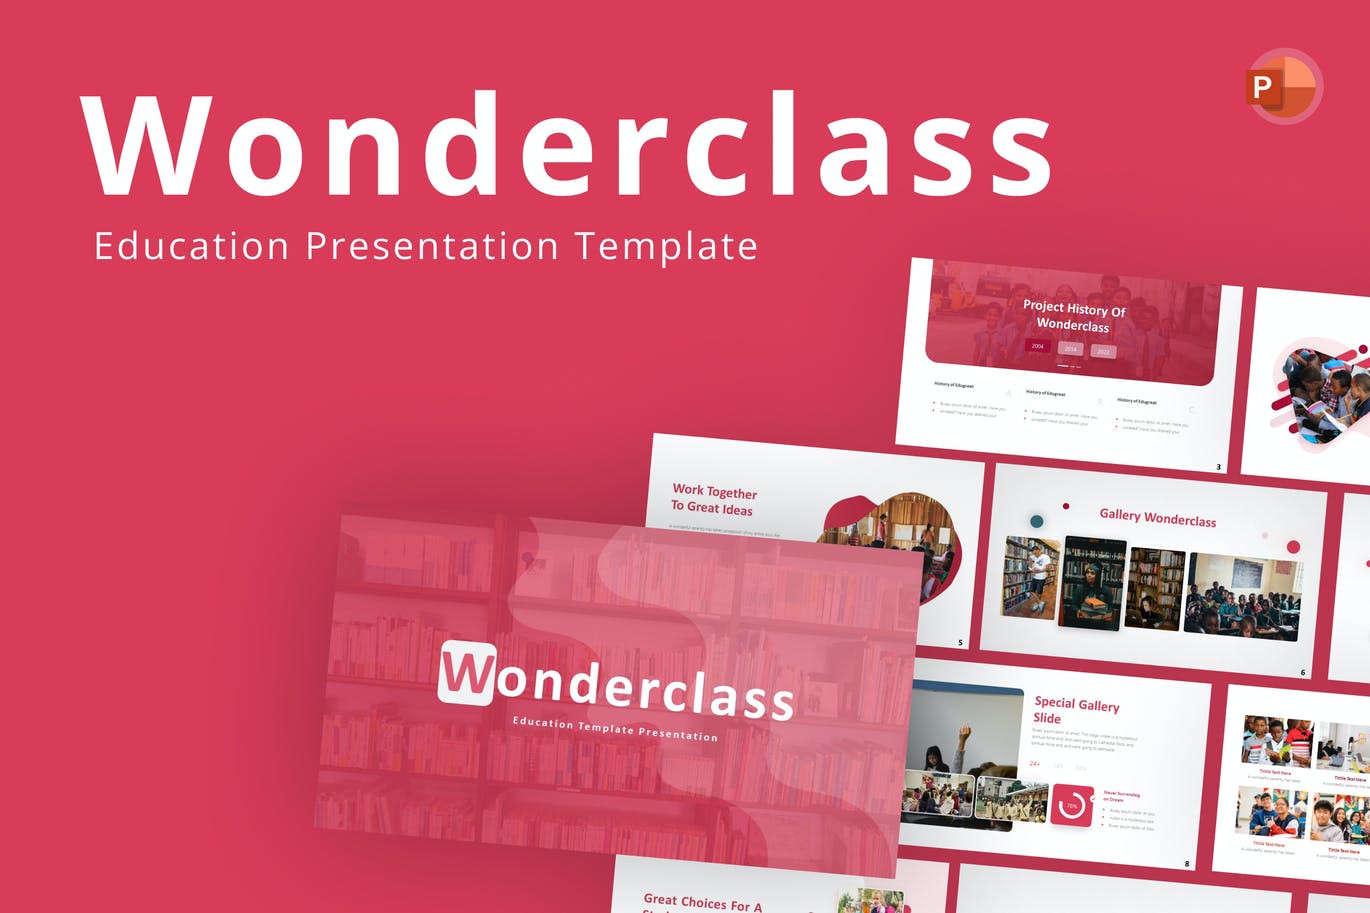 课堂教育幻灯片演示PPT模板 Wonderclass Education PowerPoint Template 幻灯图表 第1张